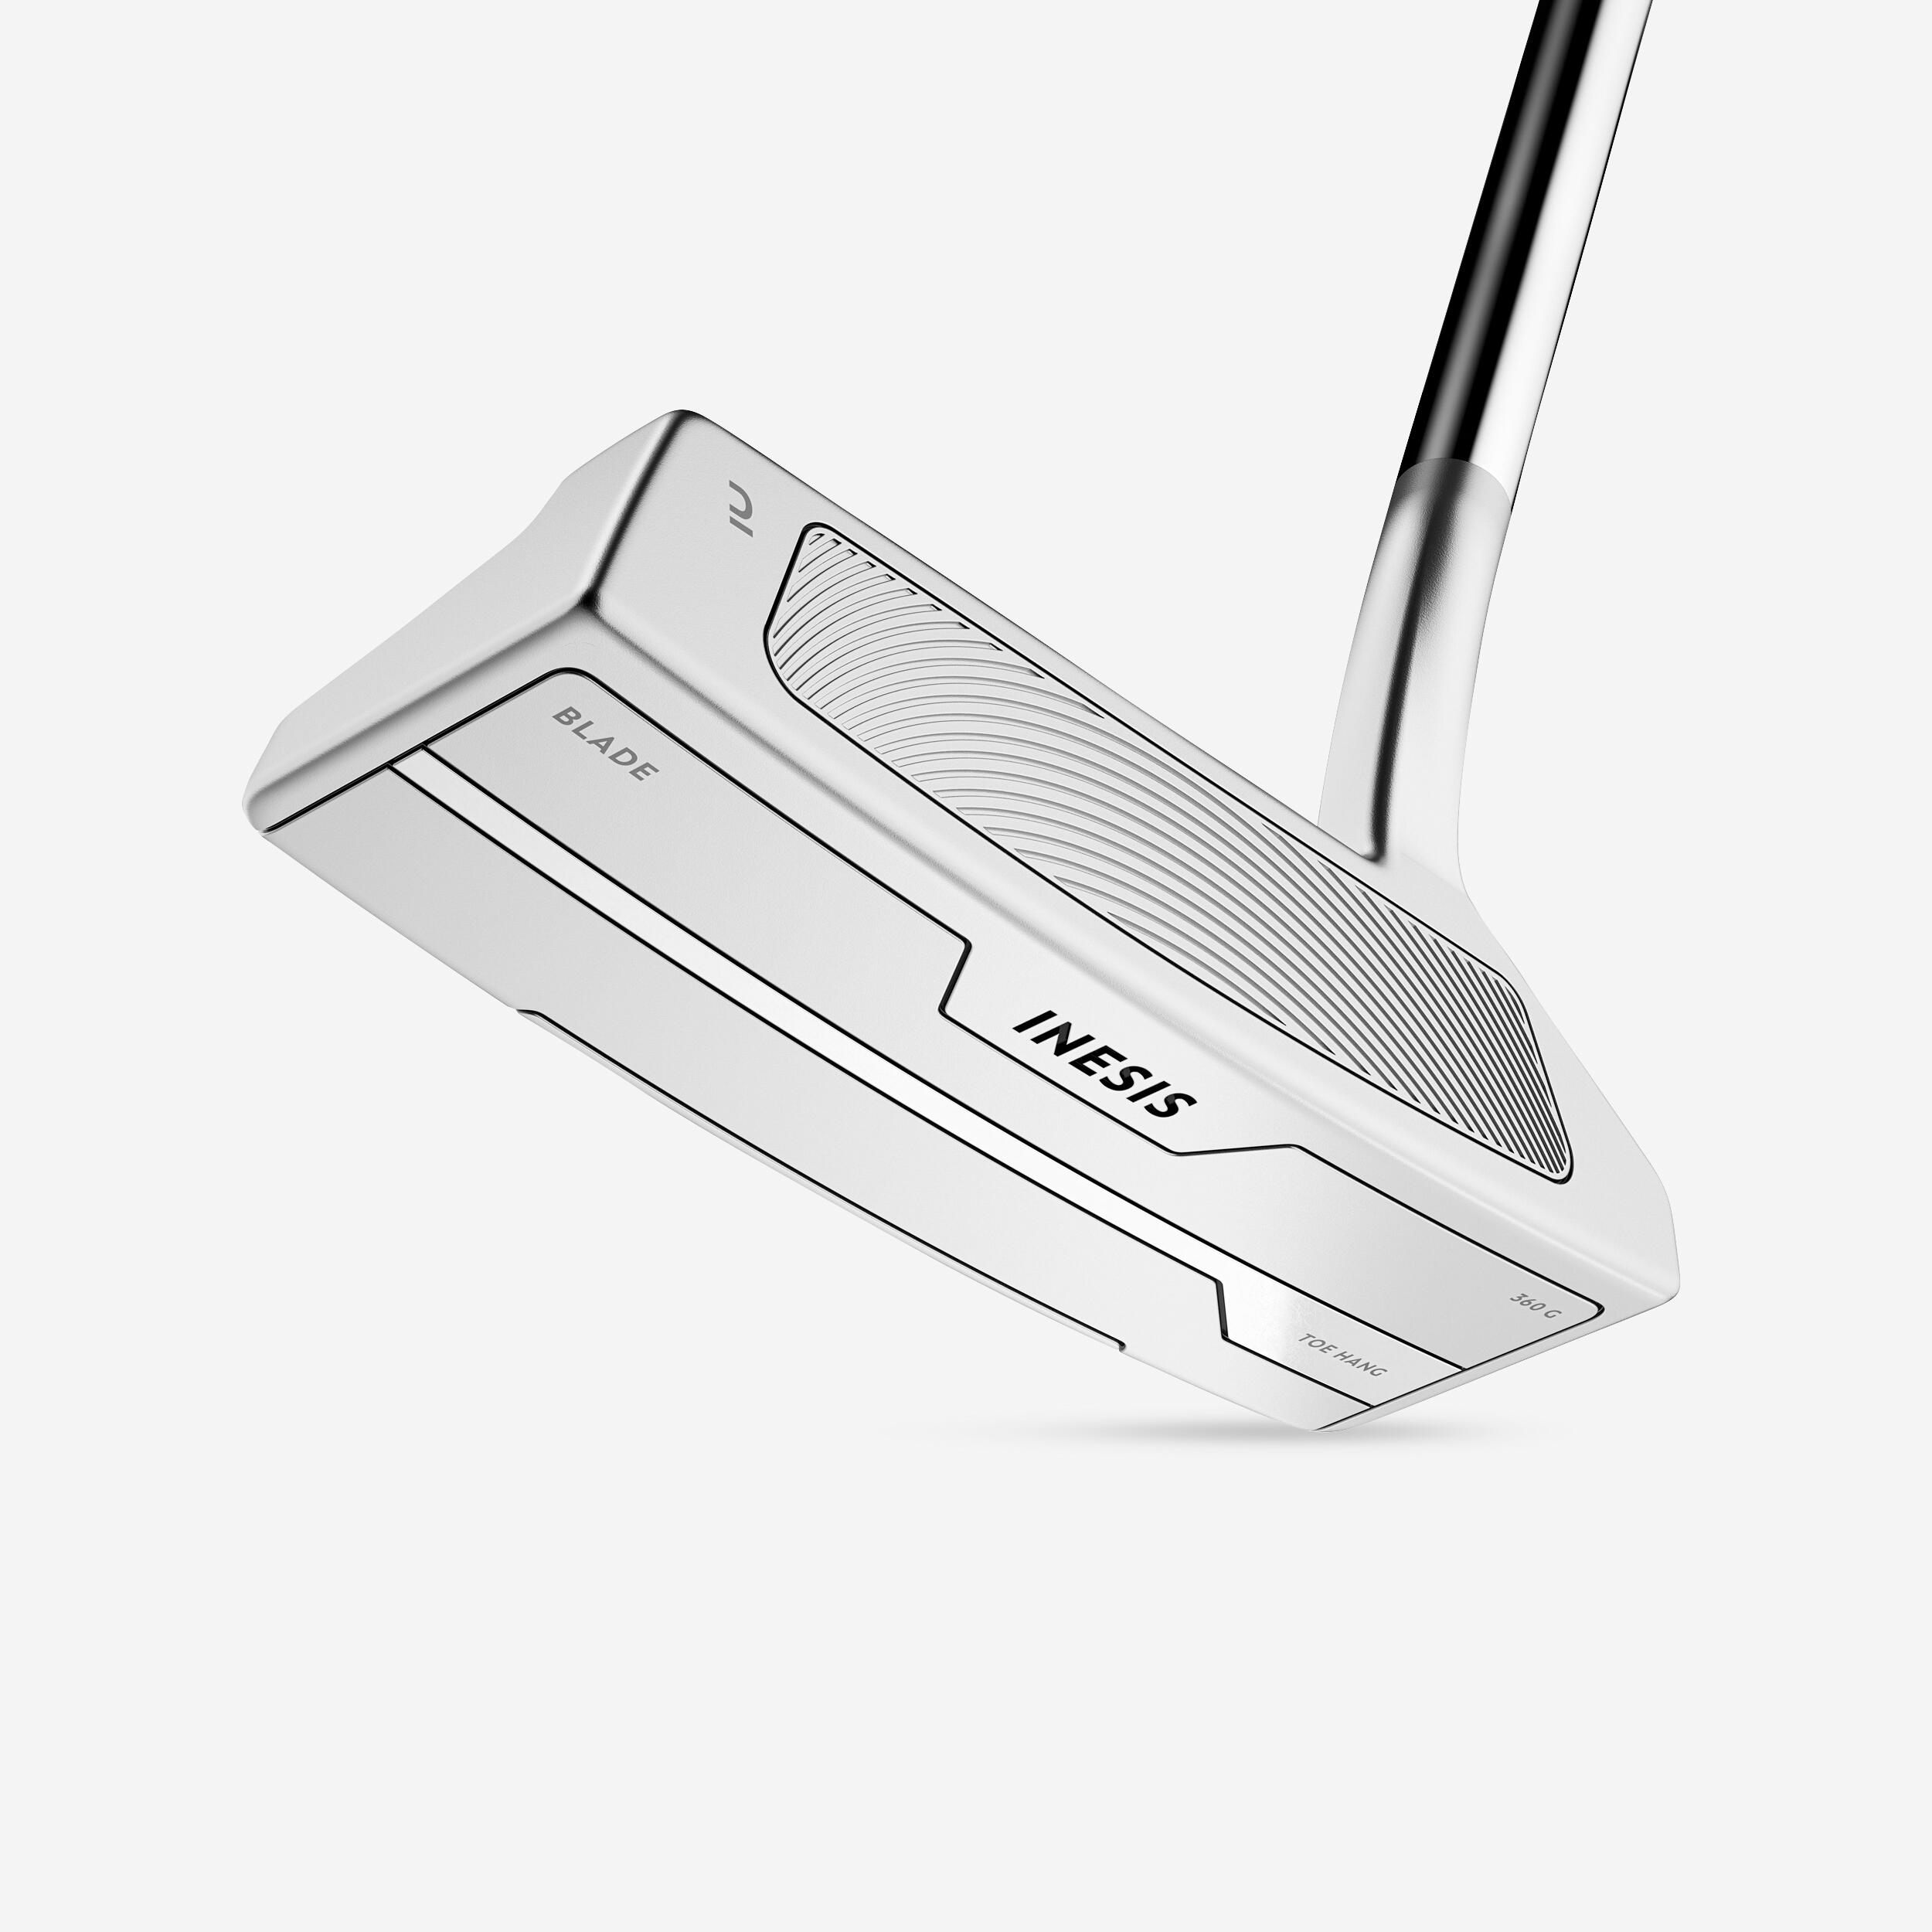 INESIS Toe hang golf putter right handed - INESIS blade